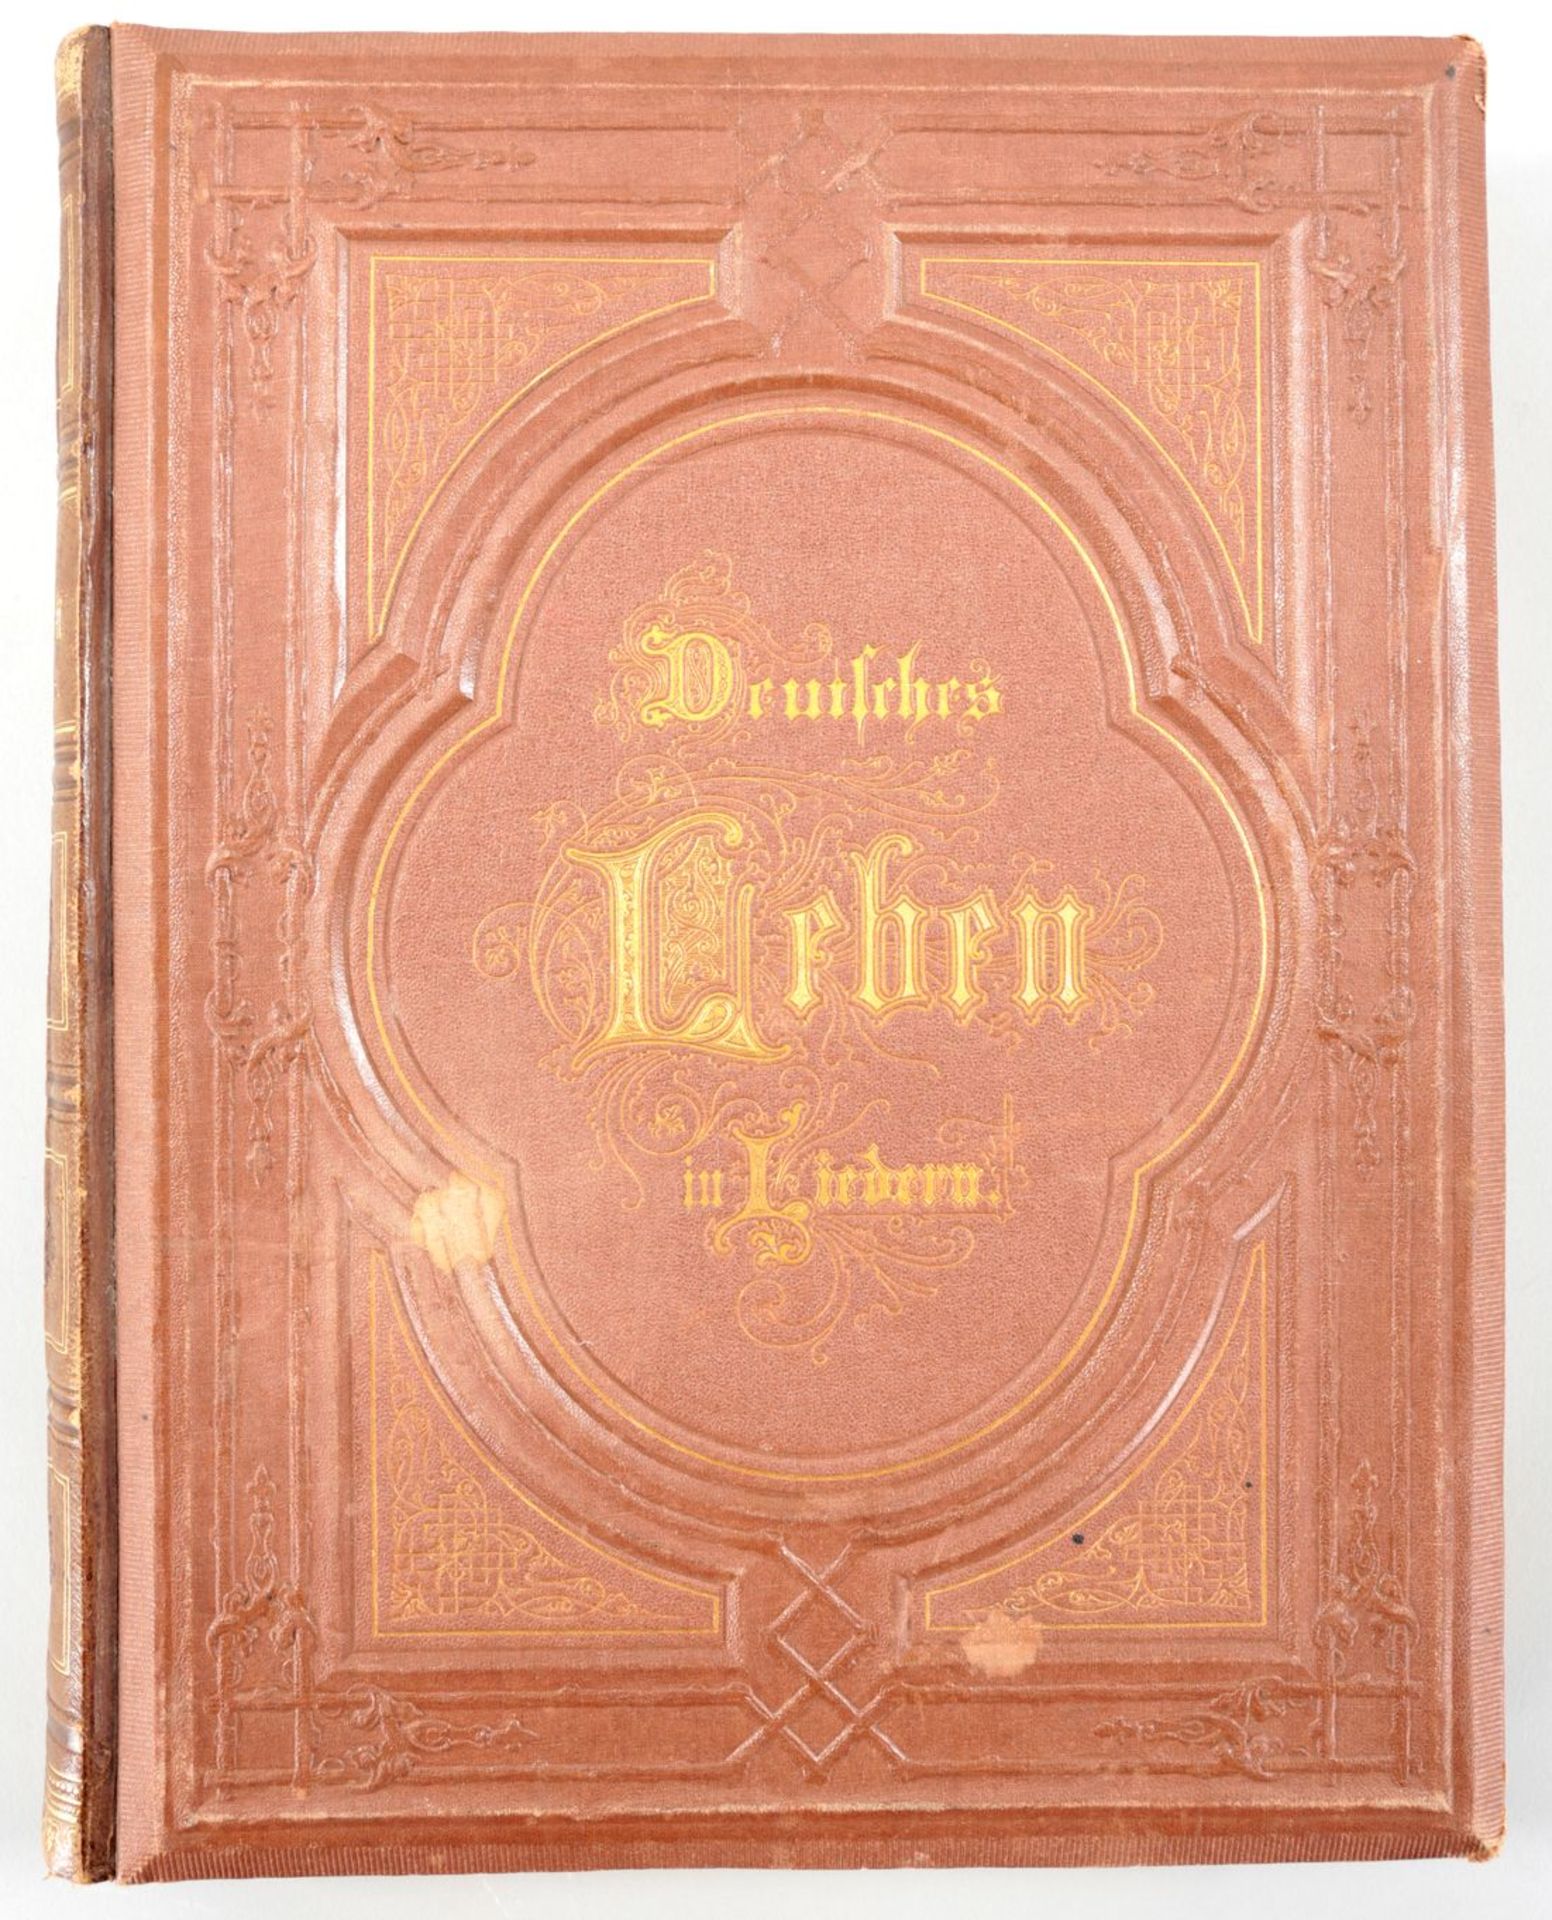 Buch "Deutsches Leben in Liedern" a. d. Bibliothek der Marie Therese